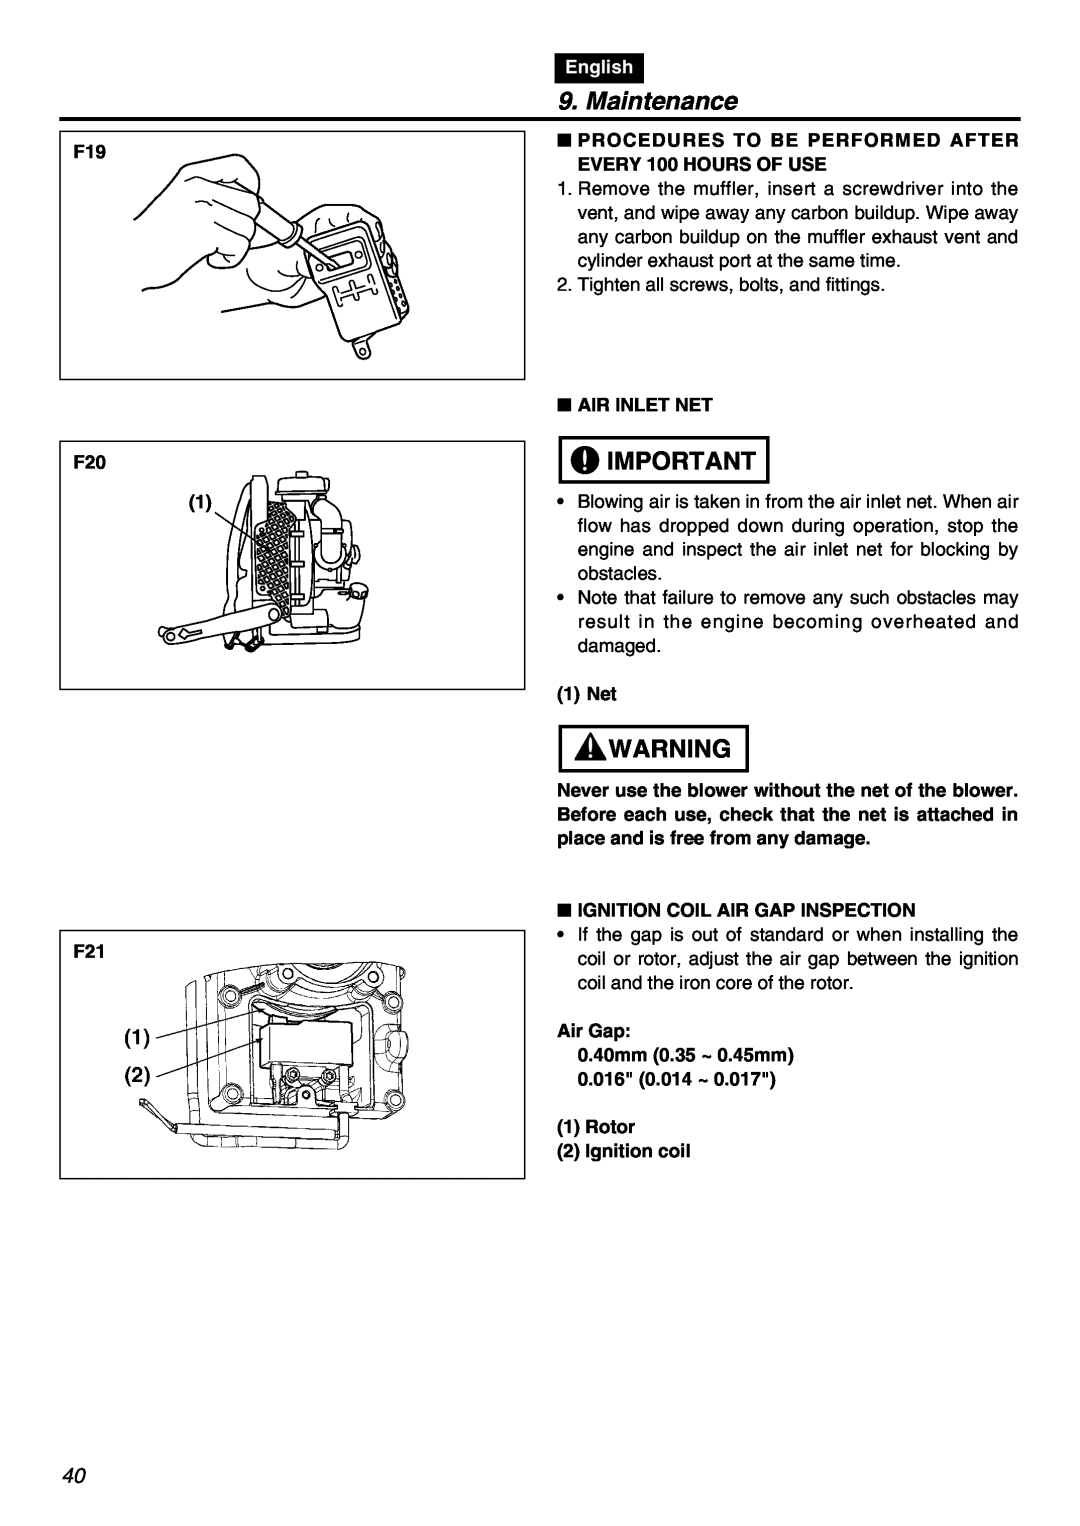 RedMax EBZ7001RH-CA, EBZ7001-CA manual Maintenance, F19 F20, English 